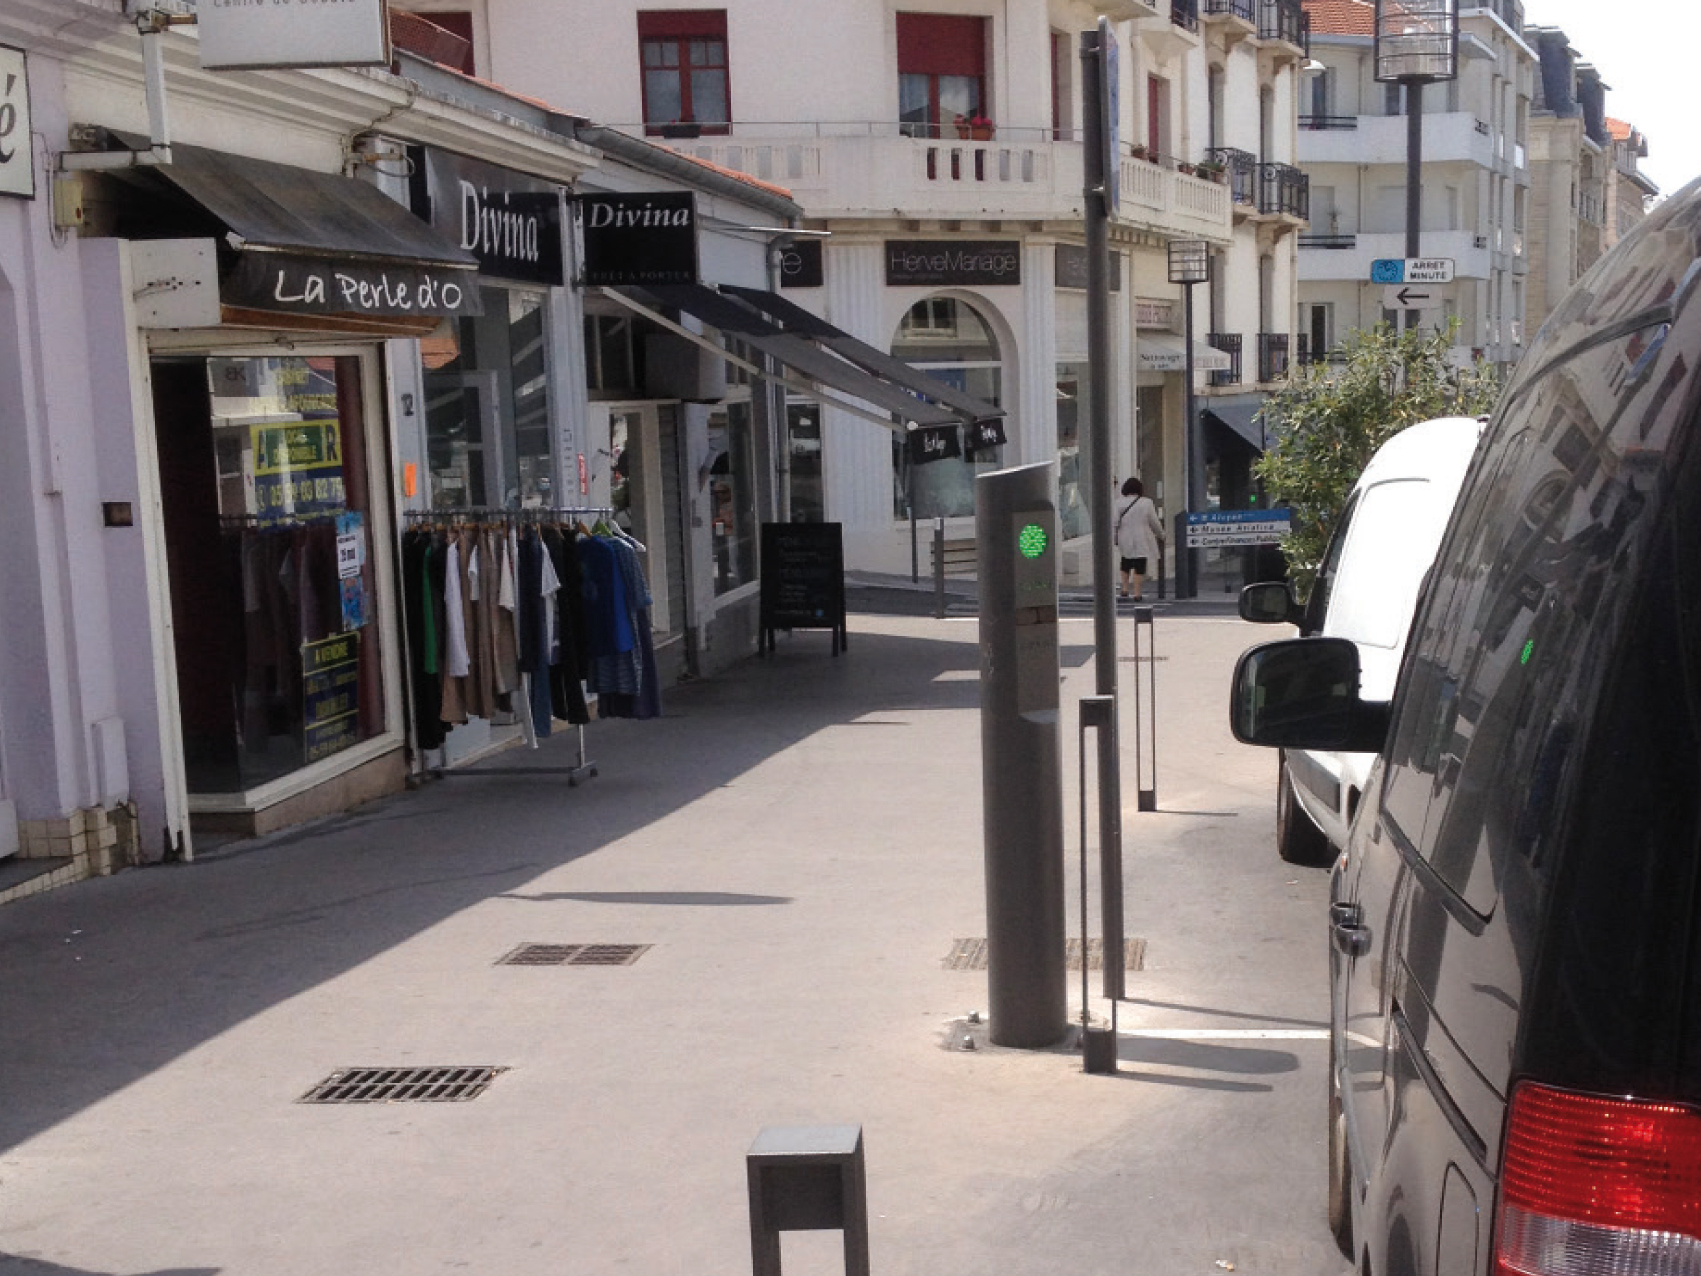 Borne stationnement dans la ville de Biarritz